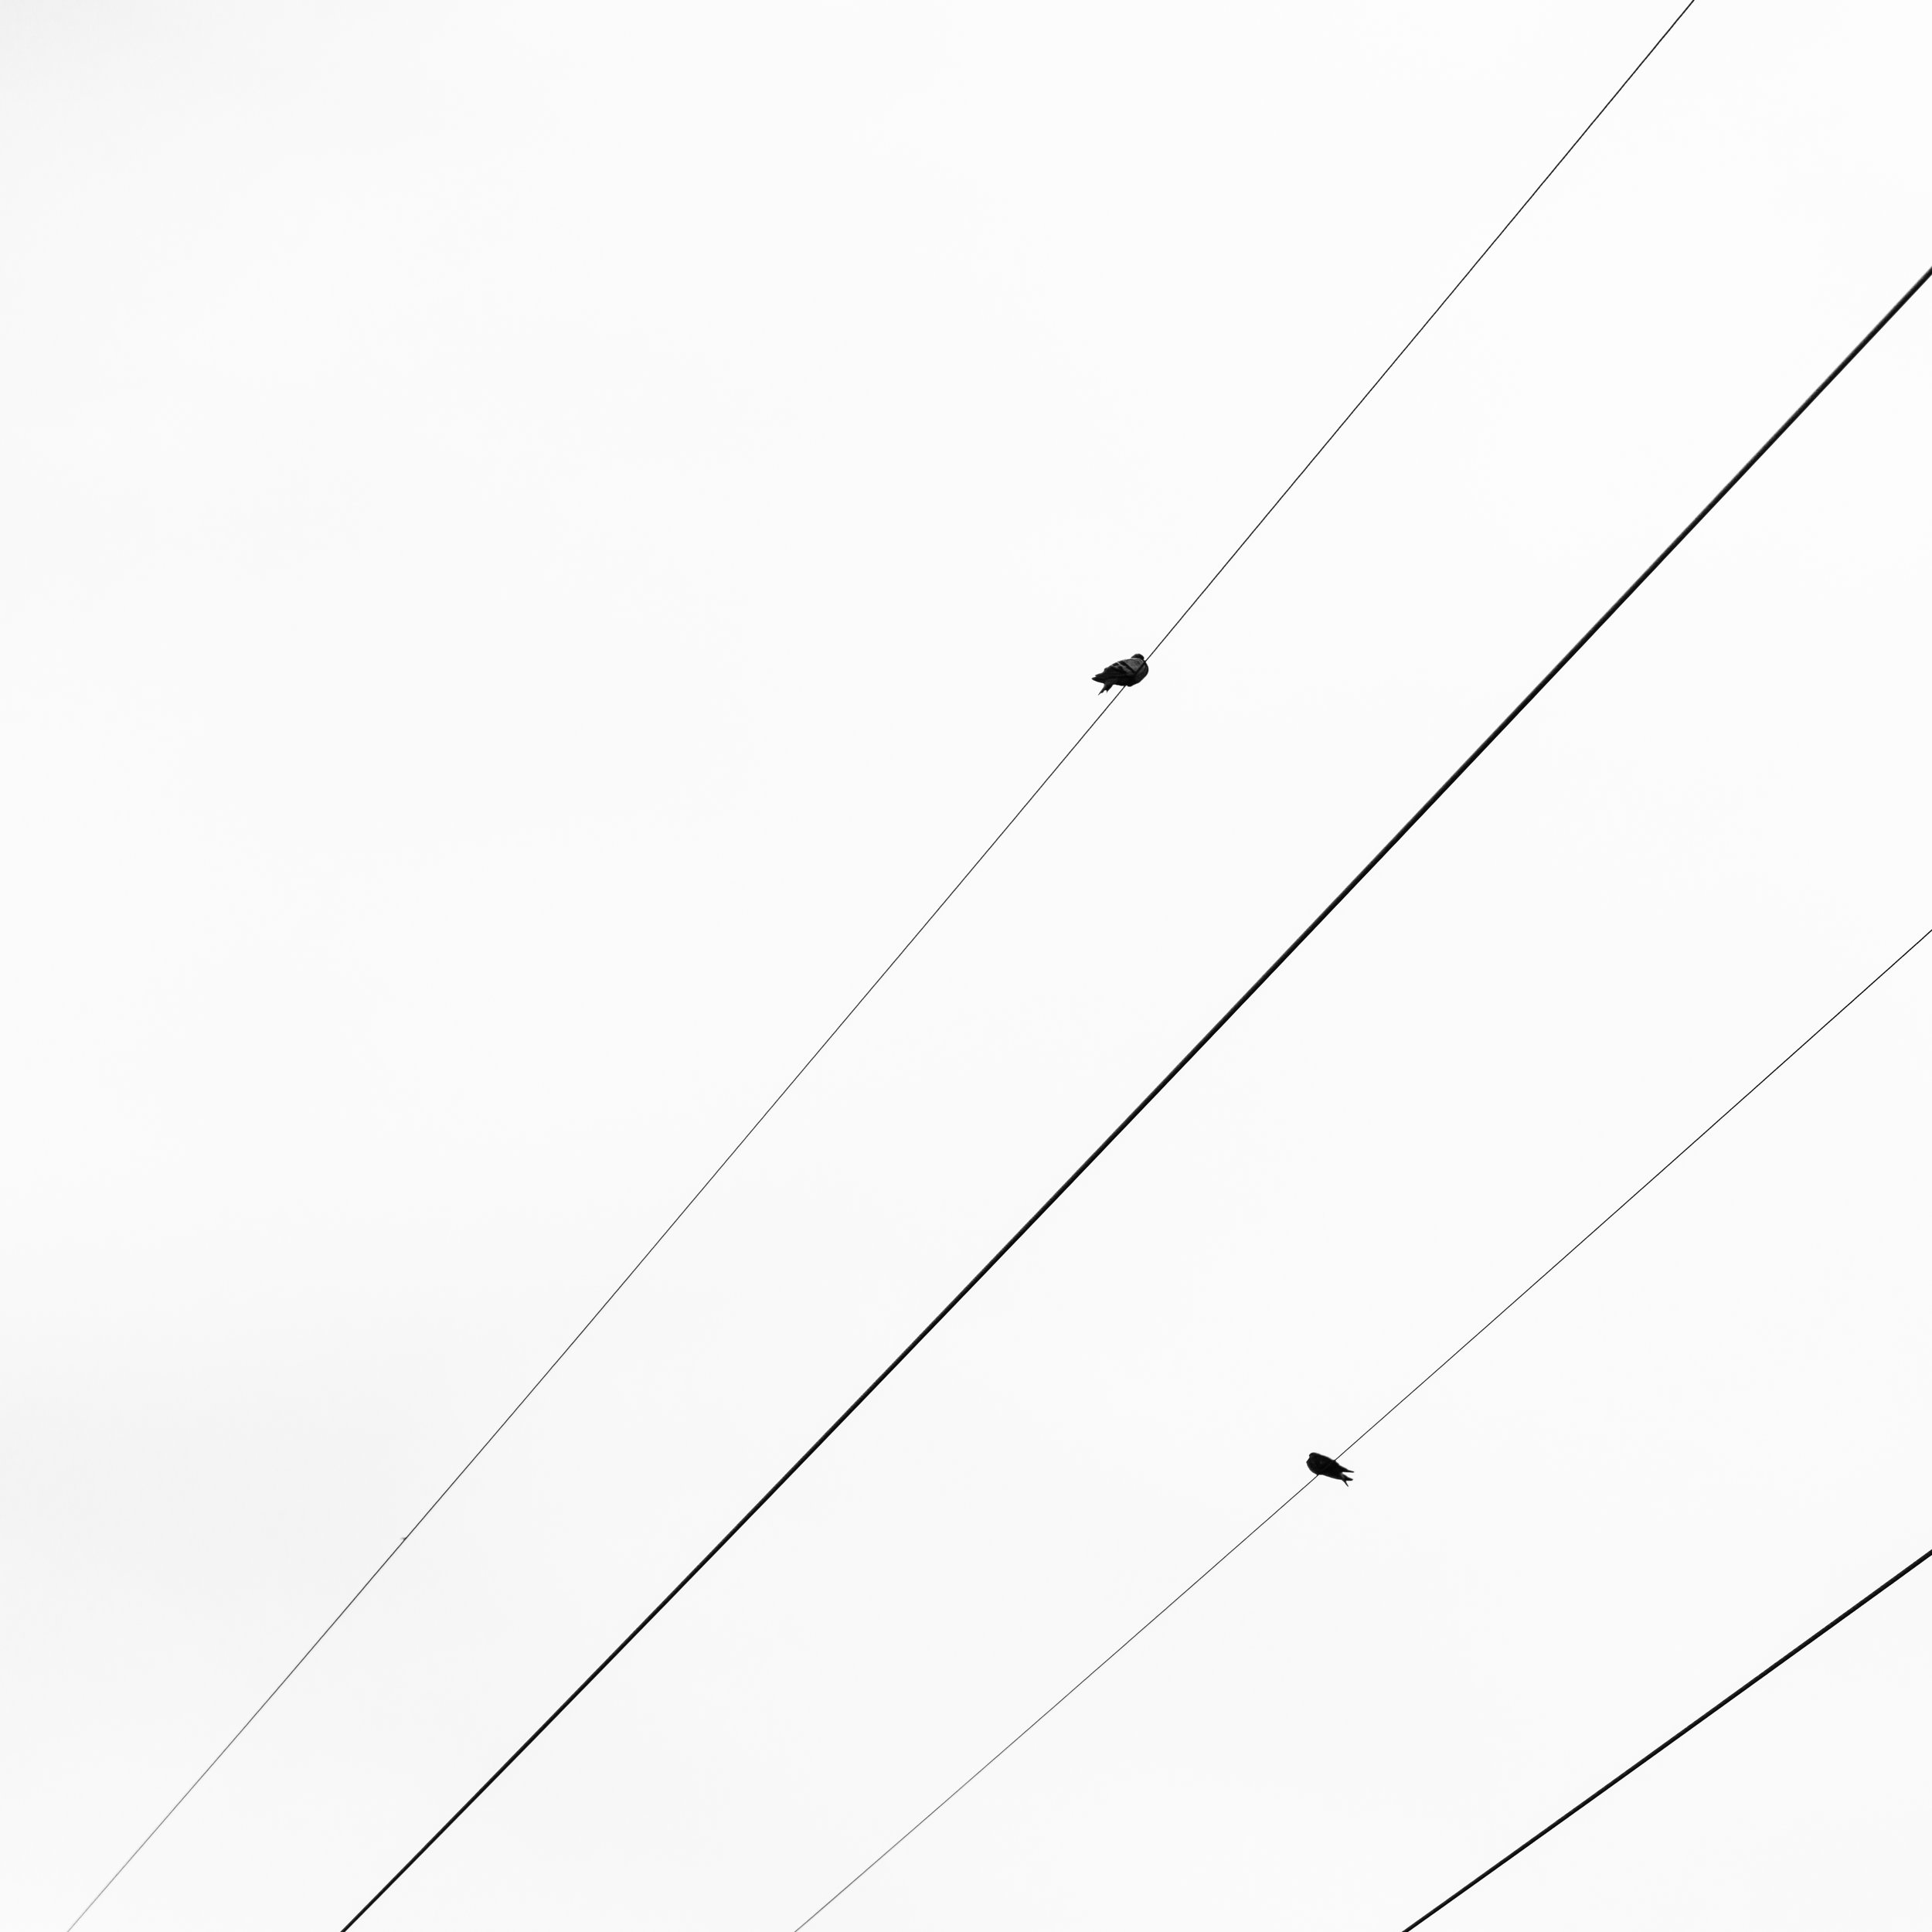   4 Wires, 2 Birds  2018     